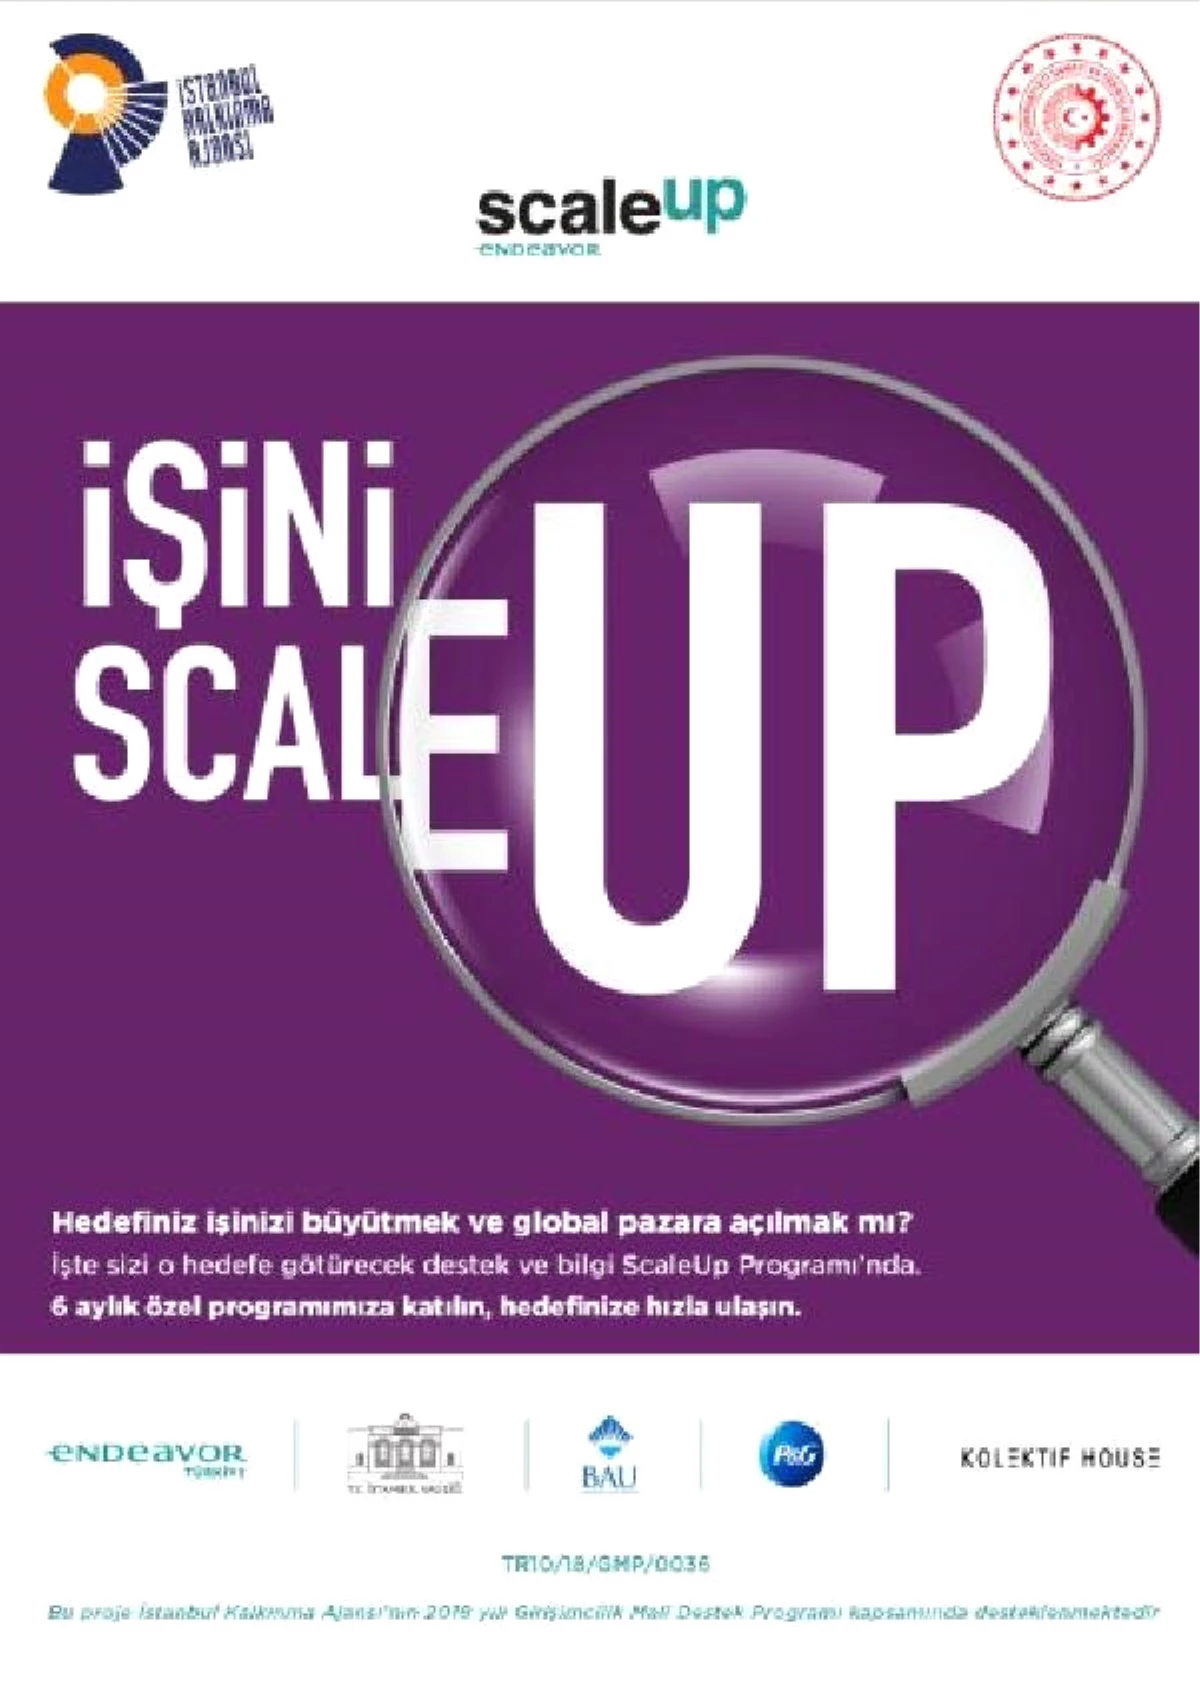 Scaleup Girişimci Hızlandırma Programı" Başlıyor